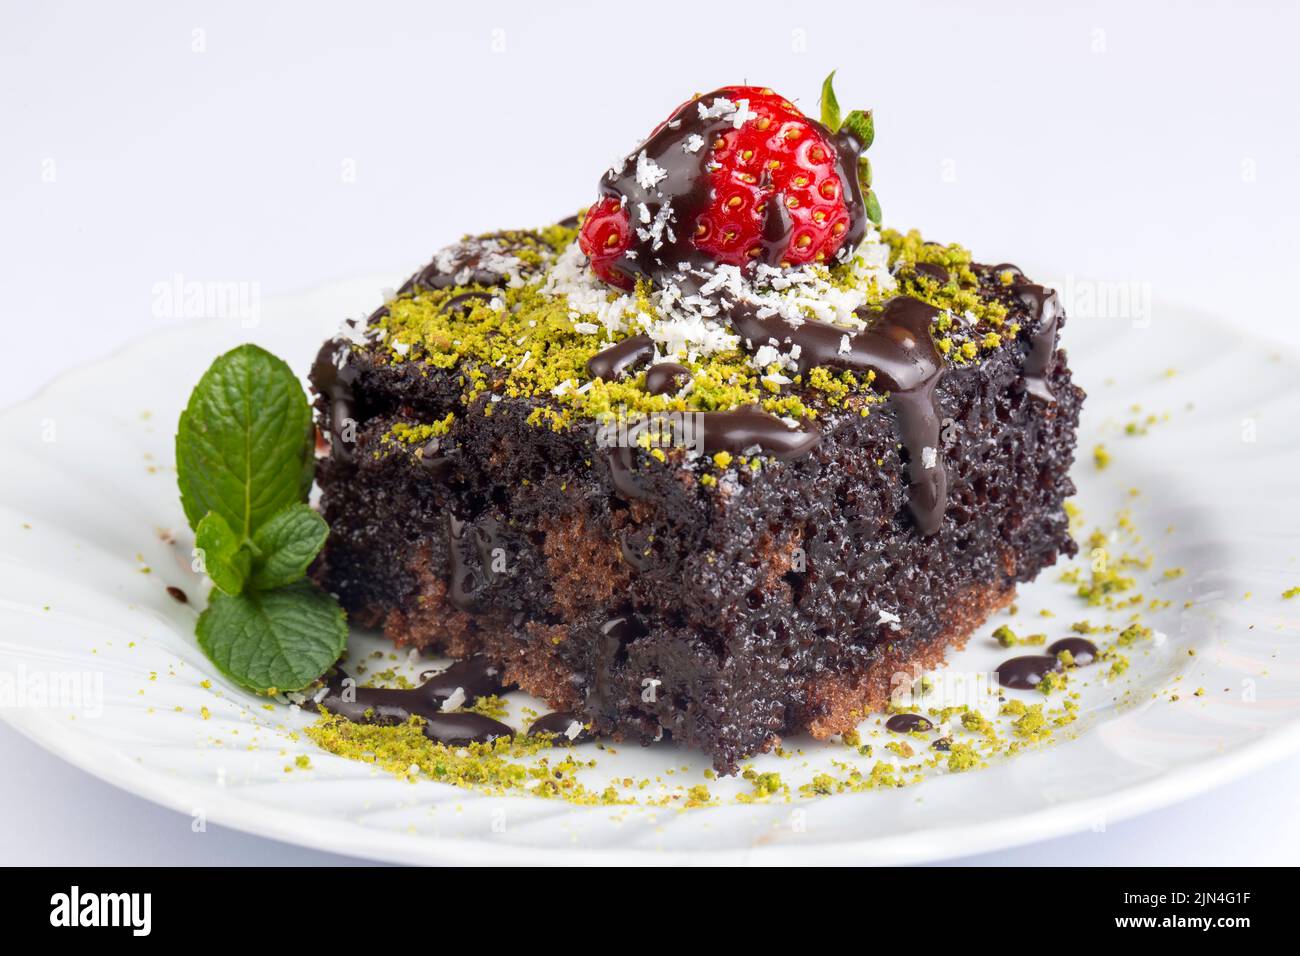 Schokoladenkuchen. Nasser Kuchen auf einem Teller. Backwaren. Nahaufnahme  Stockfotografie - Alamy